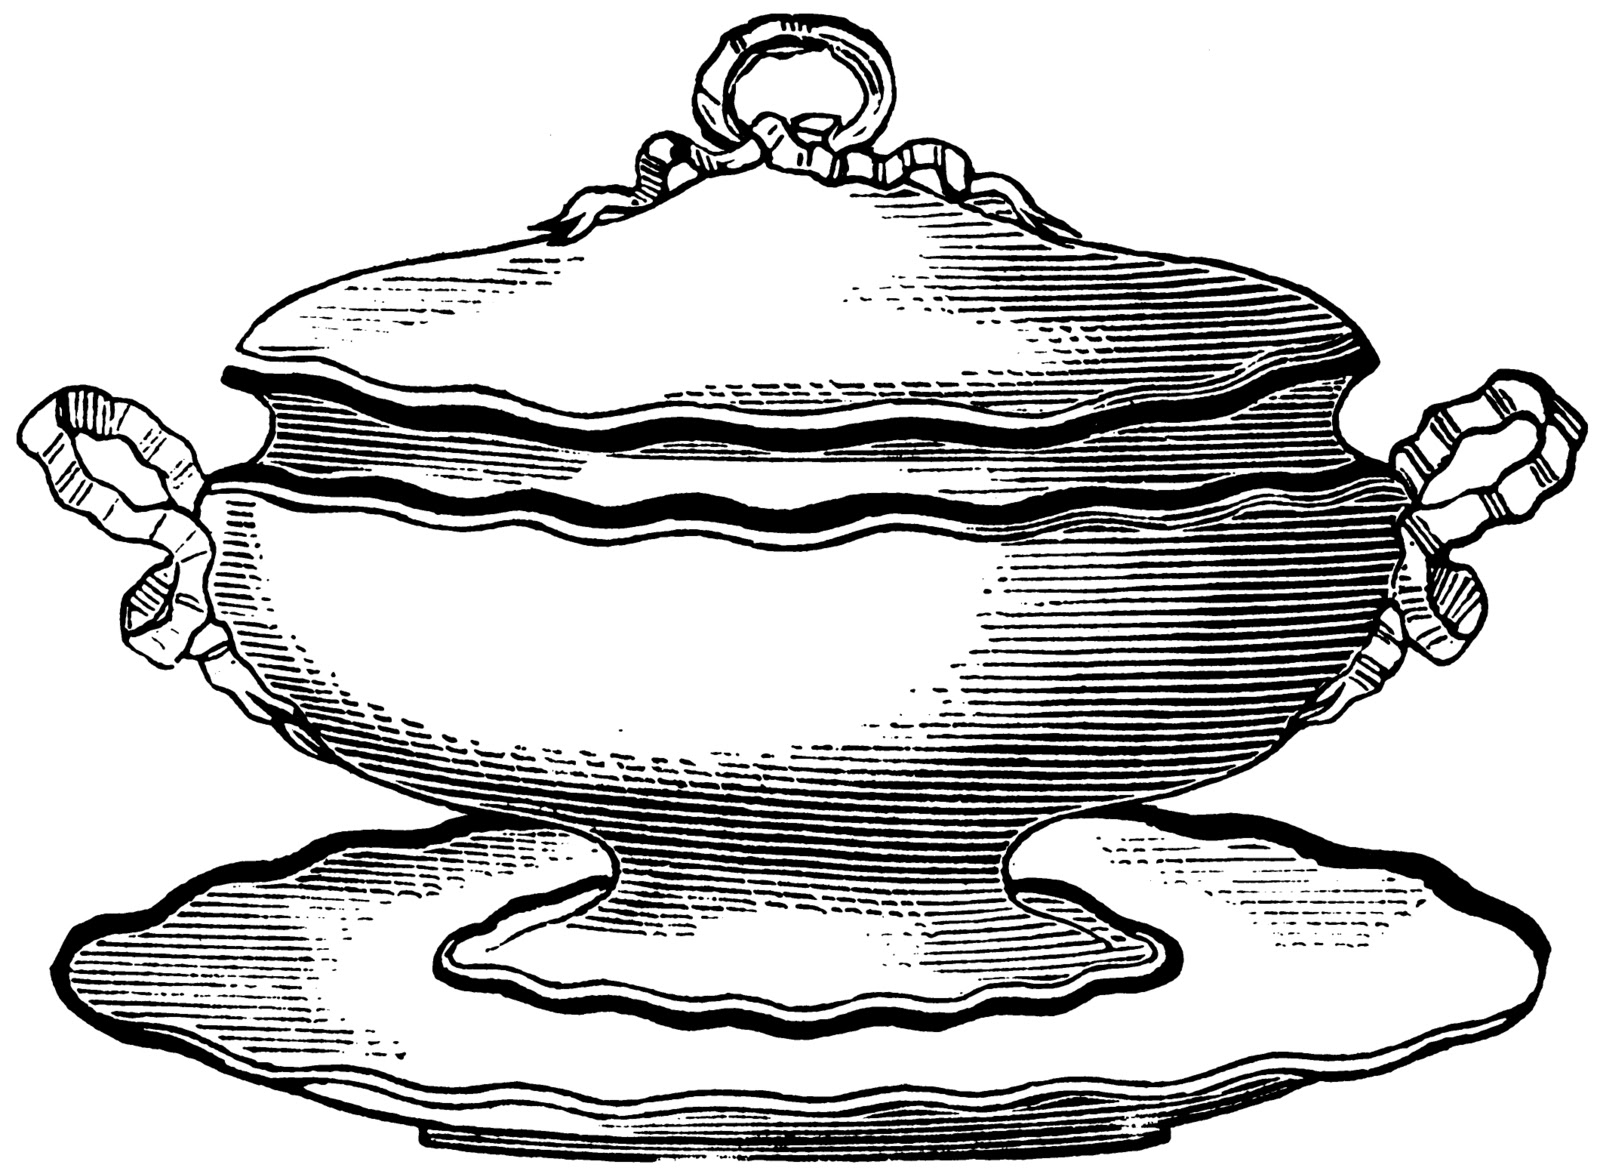 Free vintage clip art image: Vintage soup pots 